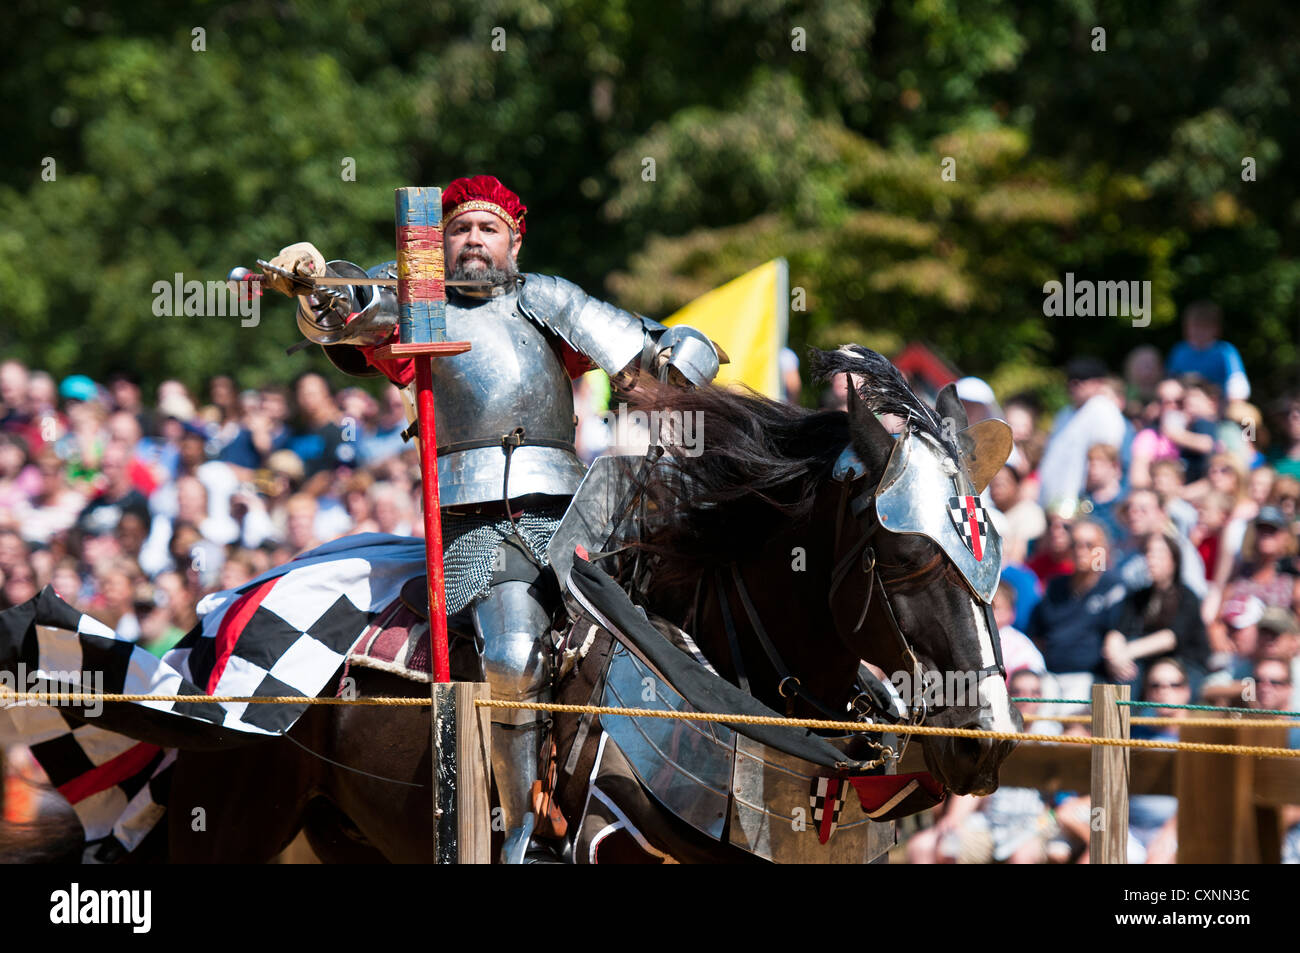 Ritter auf einem Pferd Ritter Rüstung tragen, in Maryland Renaissance Festival / Messe in Annapolis, Maryland Stockfoto